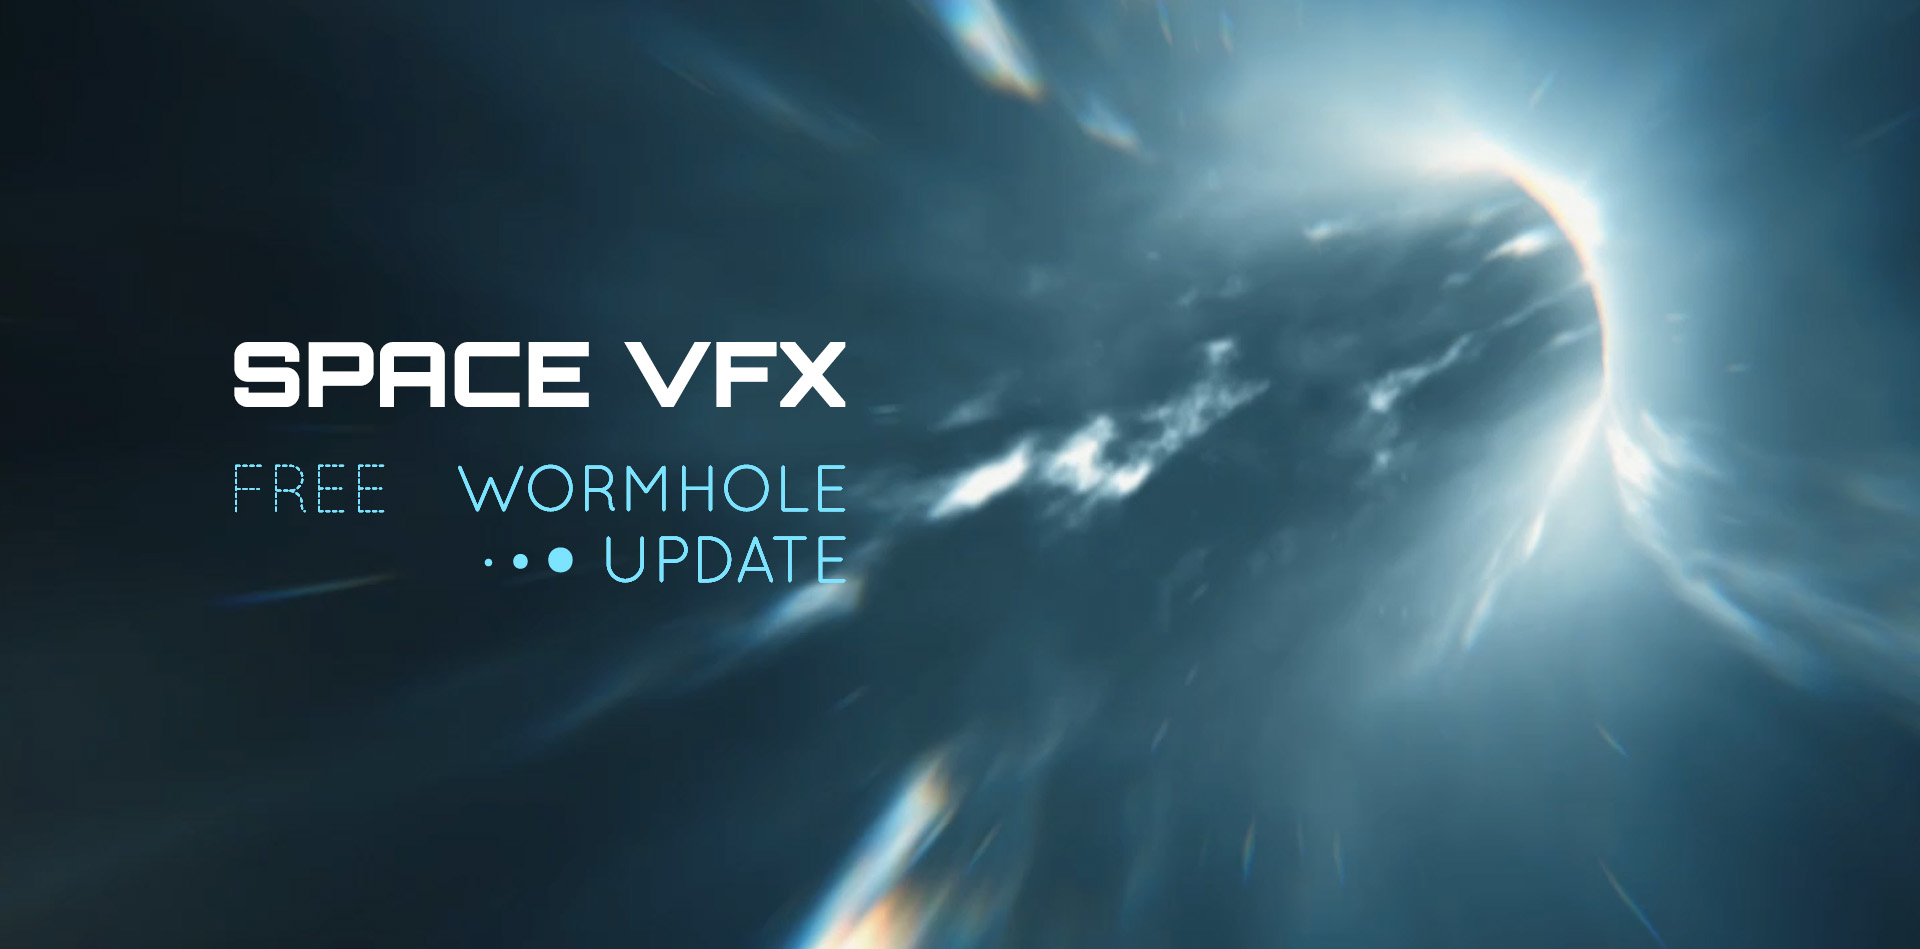 spacevfx blender tutorials update v3